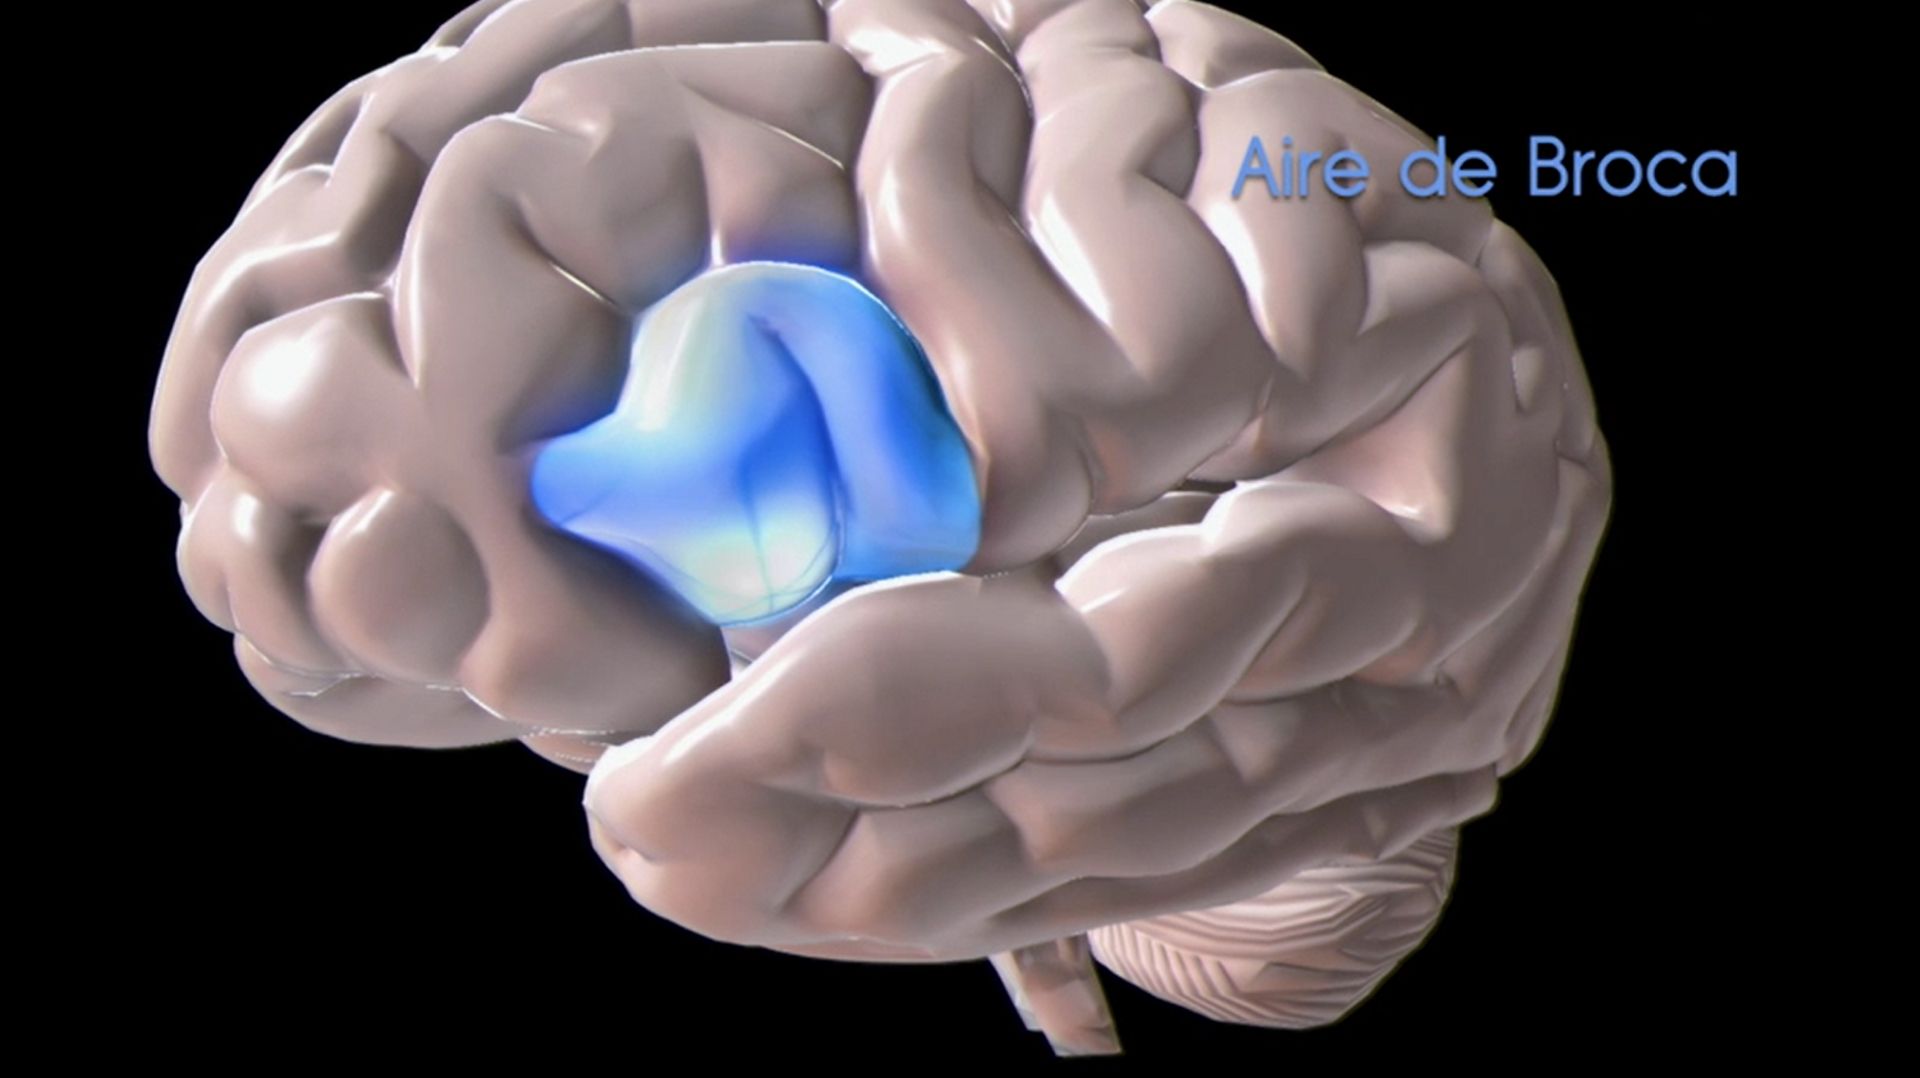 L’aire de Broca : la zone du langage, située dans le lobe frontal.